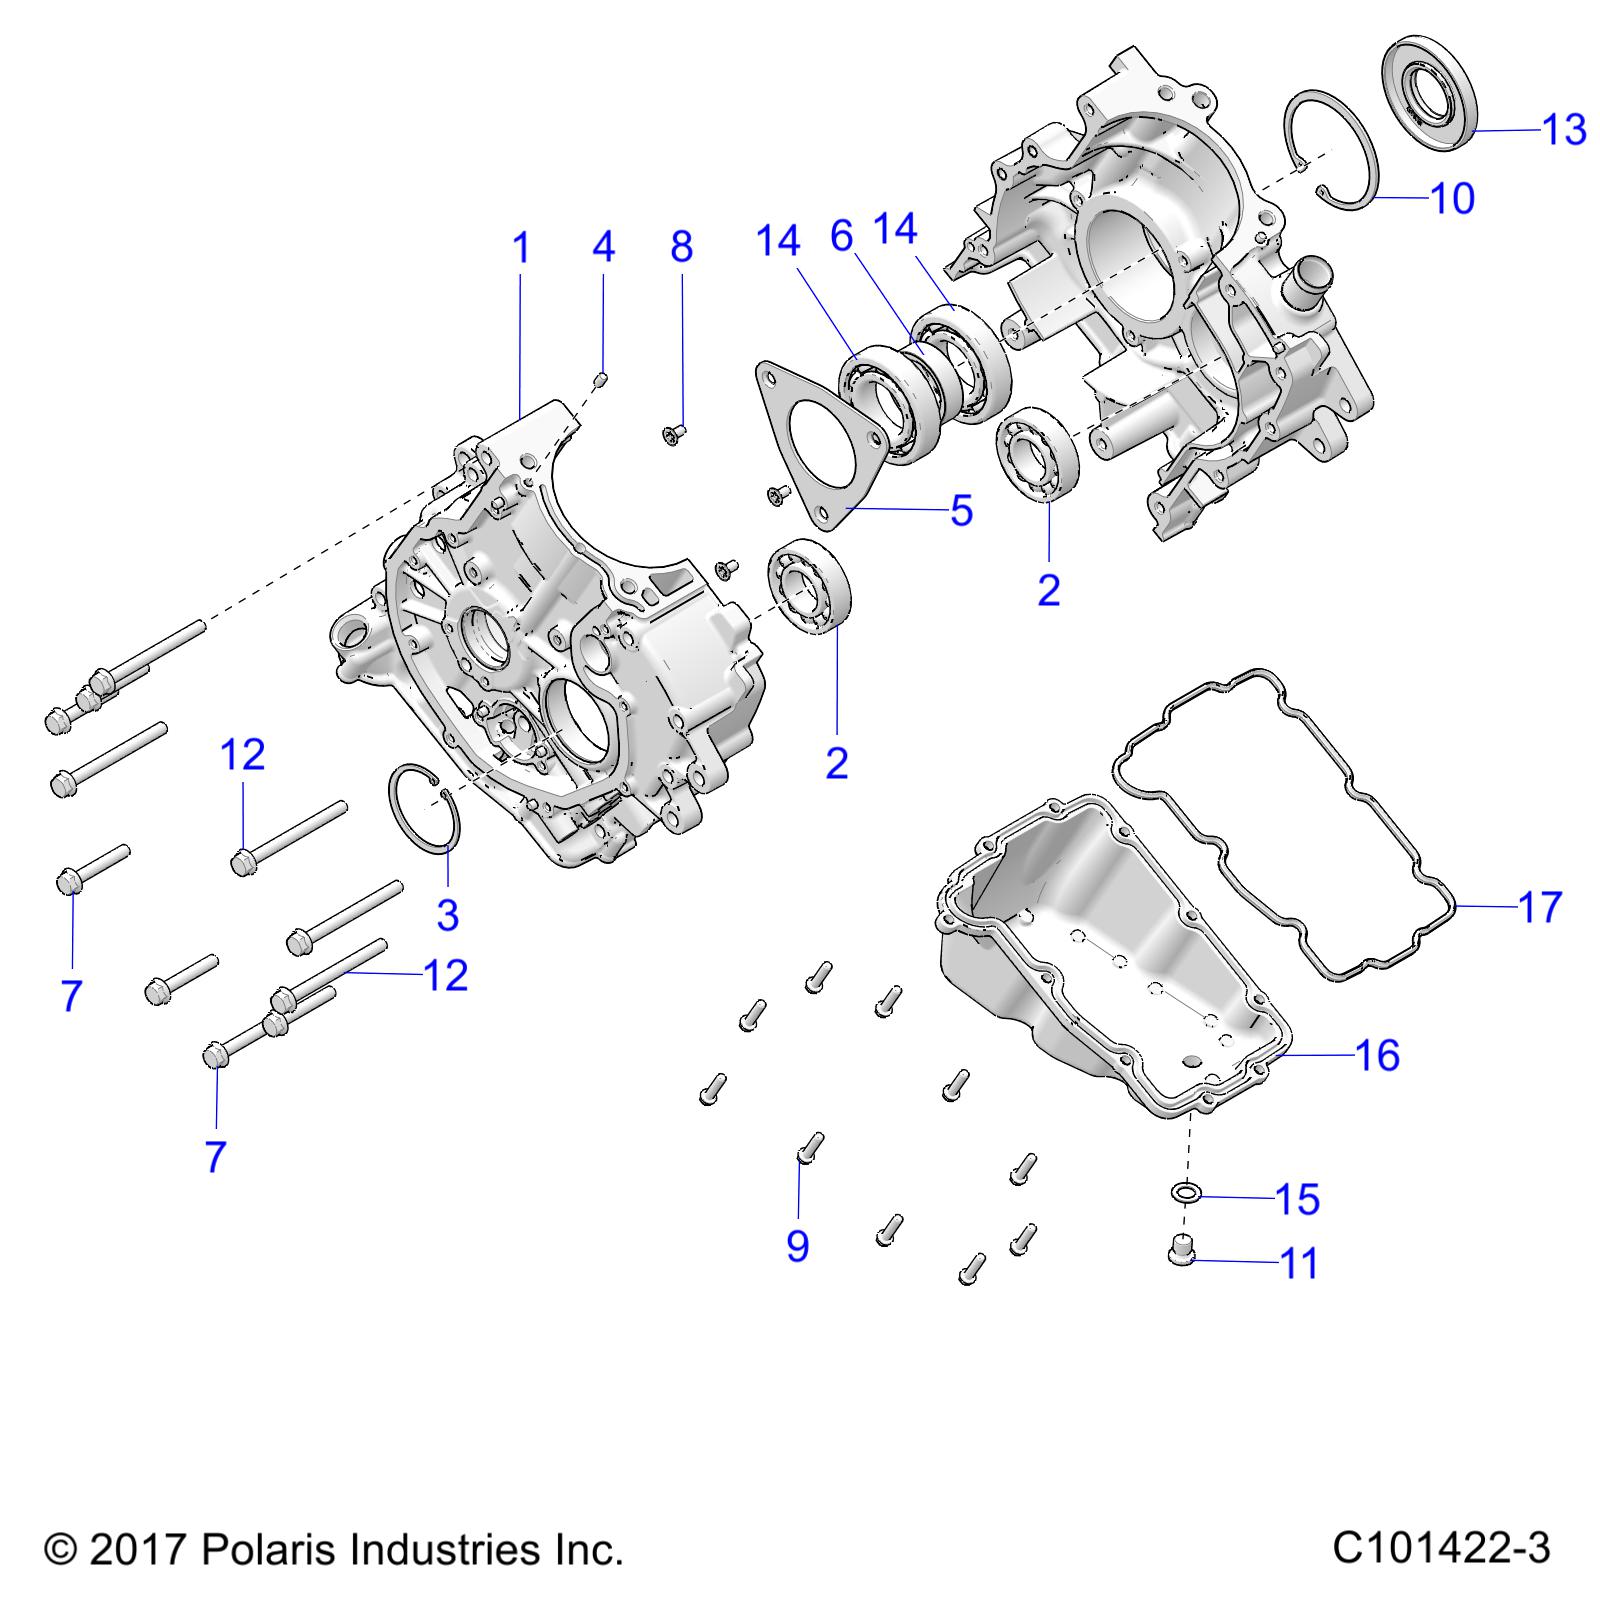 ENGINE, CRANKCASE - A19SDS57C5 (C101422-3)